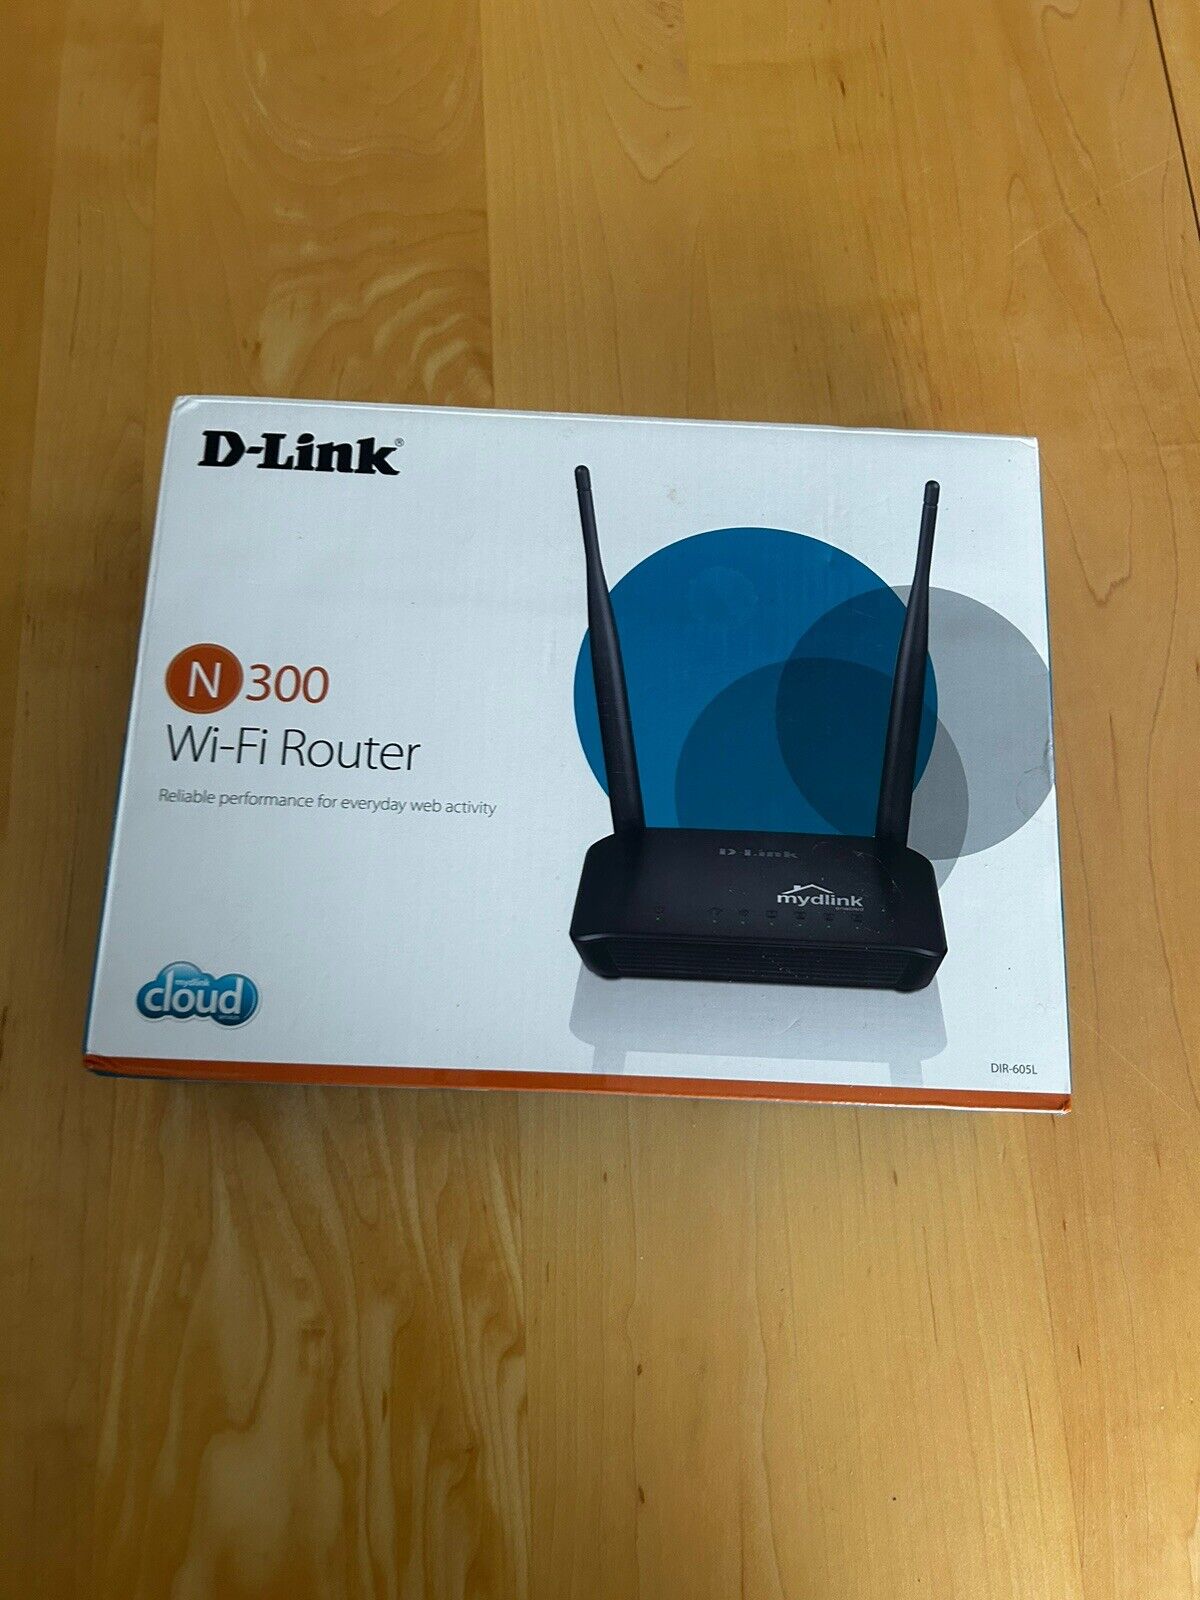 D-Link DIR-605L 300Mbps 4-Port N300 Wireless Cloud Router 